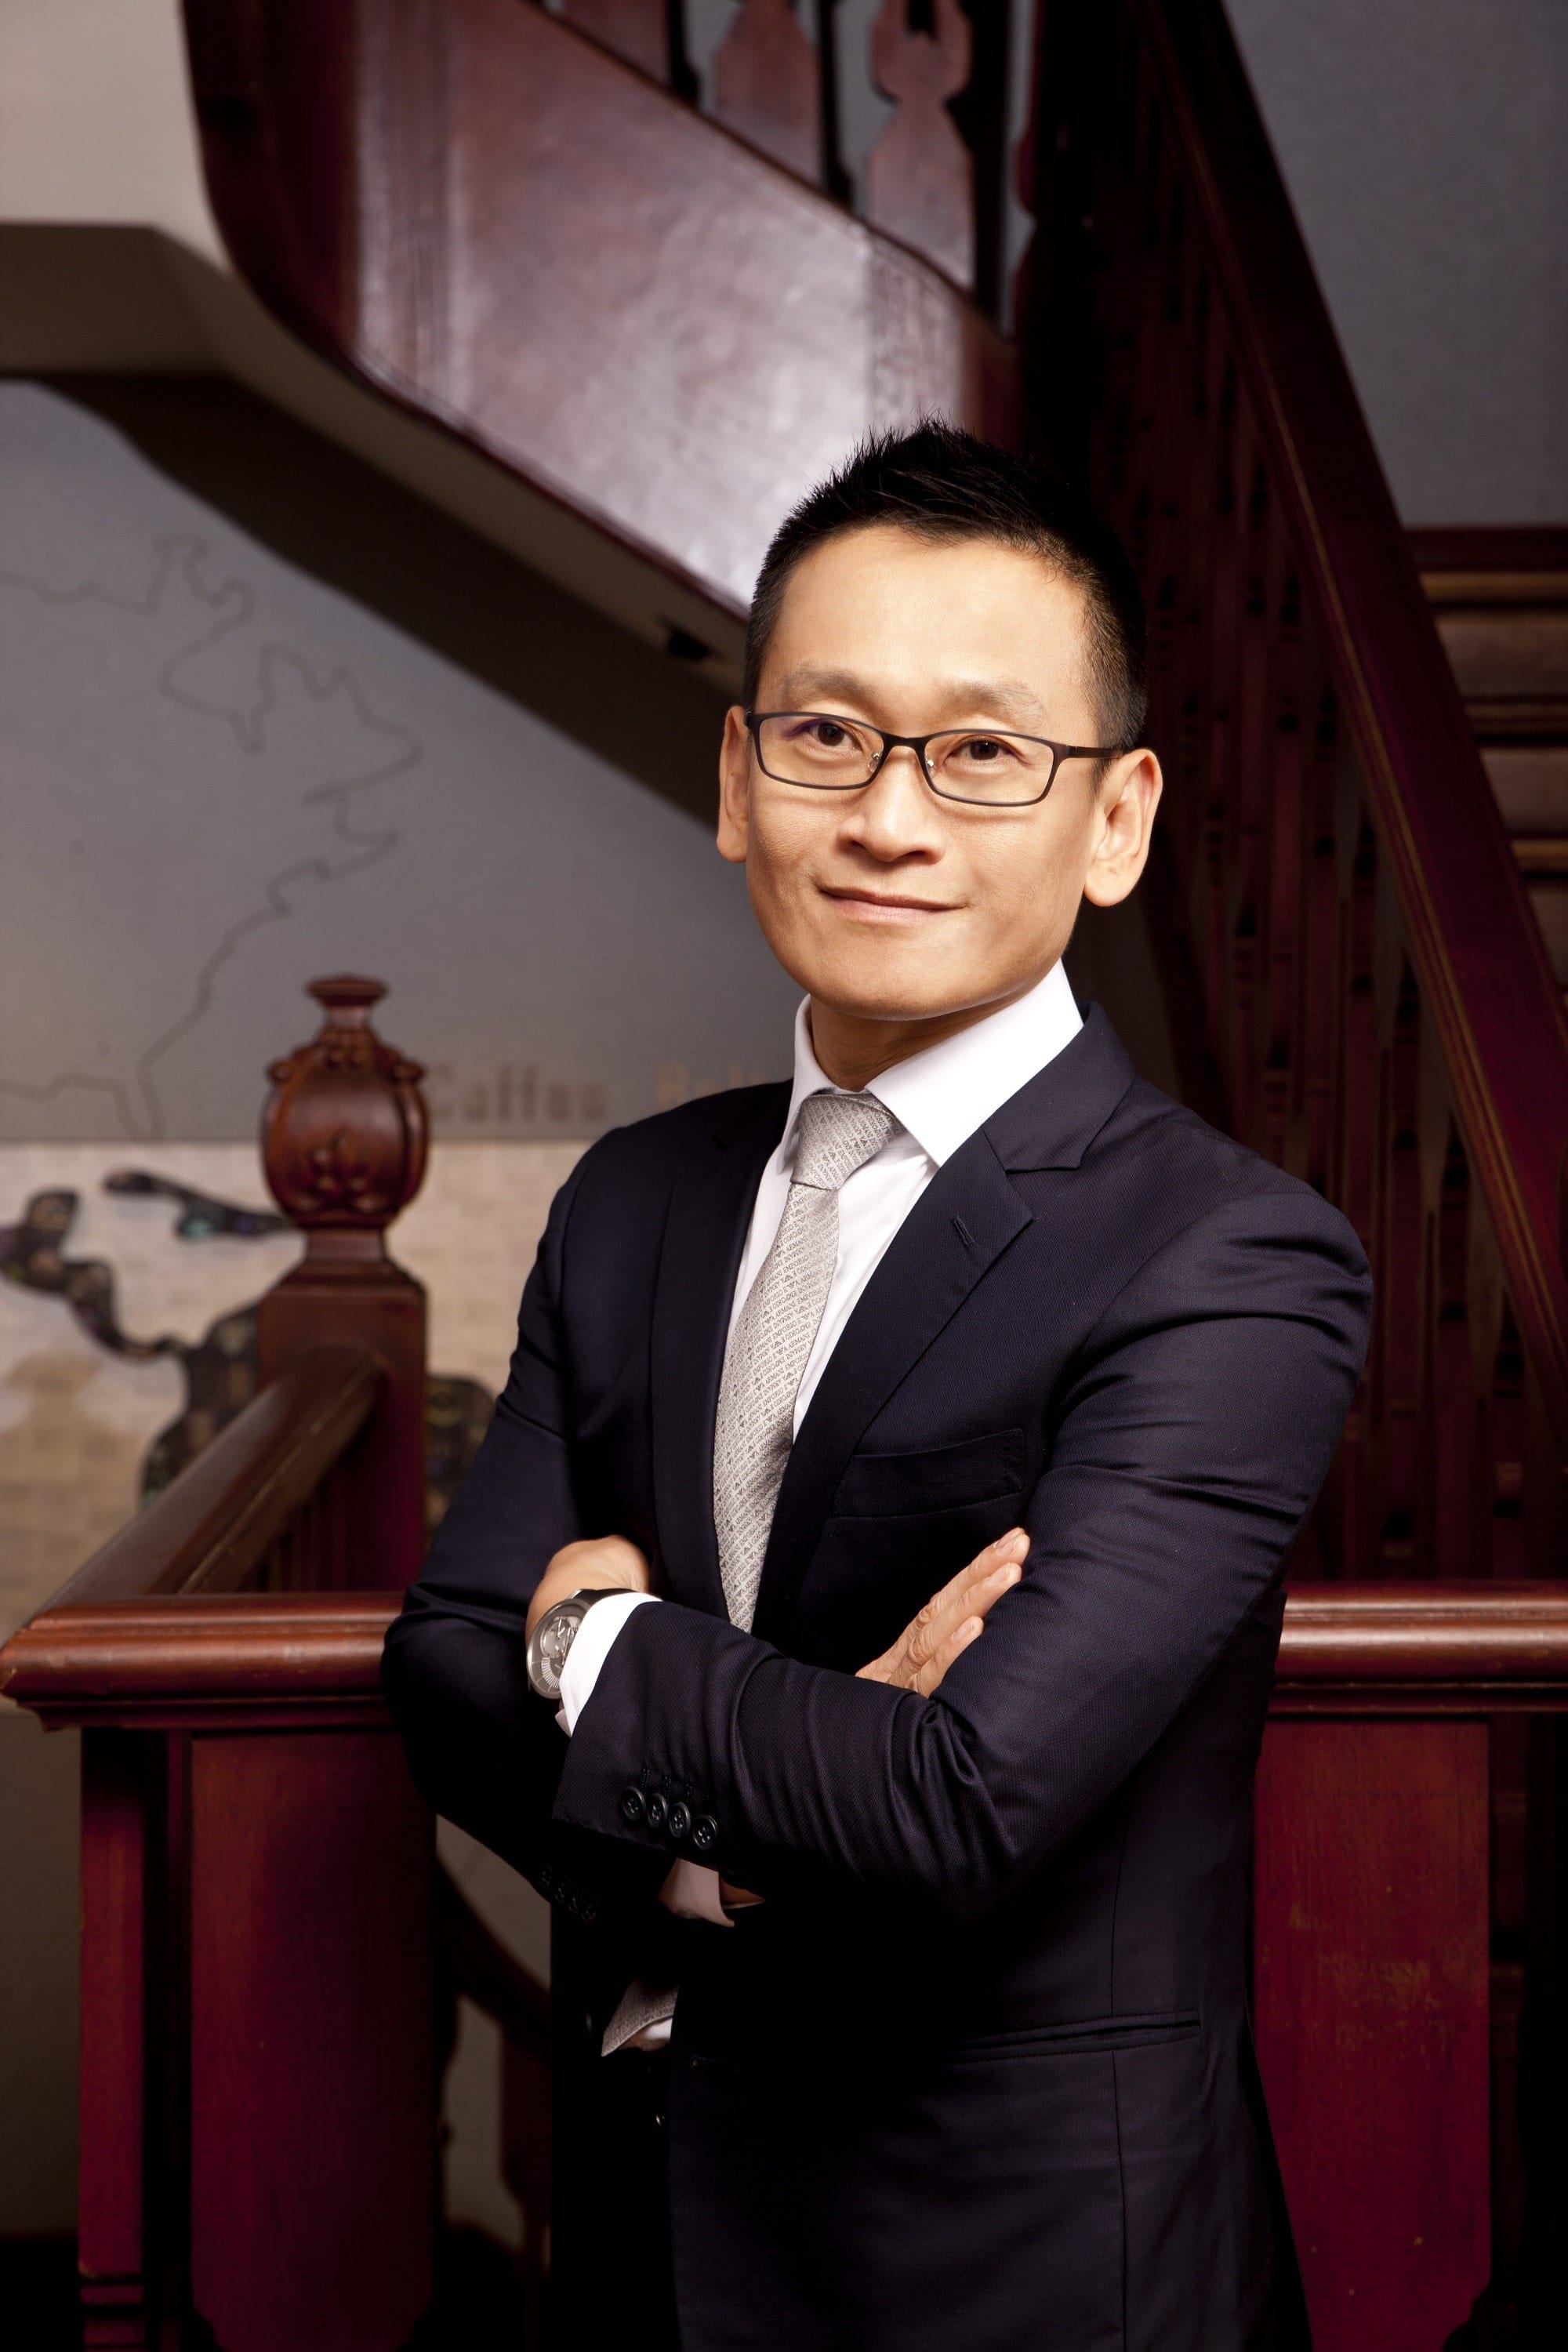 星巴克中国零售总裁兼首席运营官蔡德粦 (Leo Tsoi)